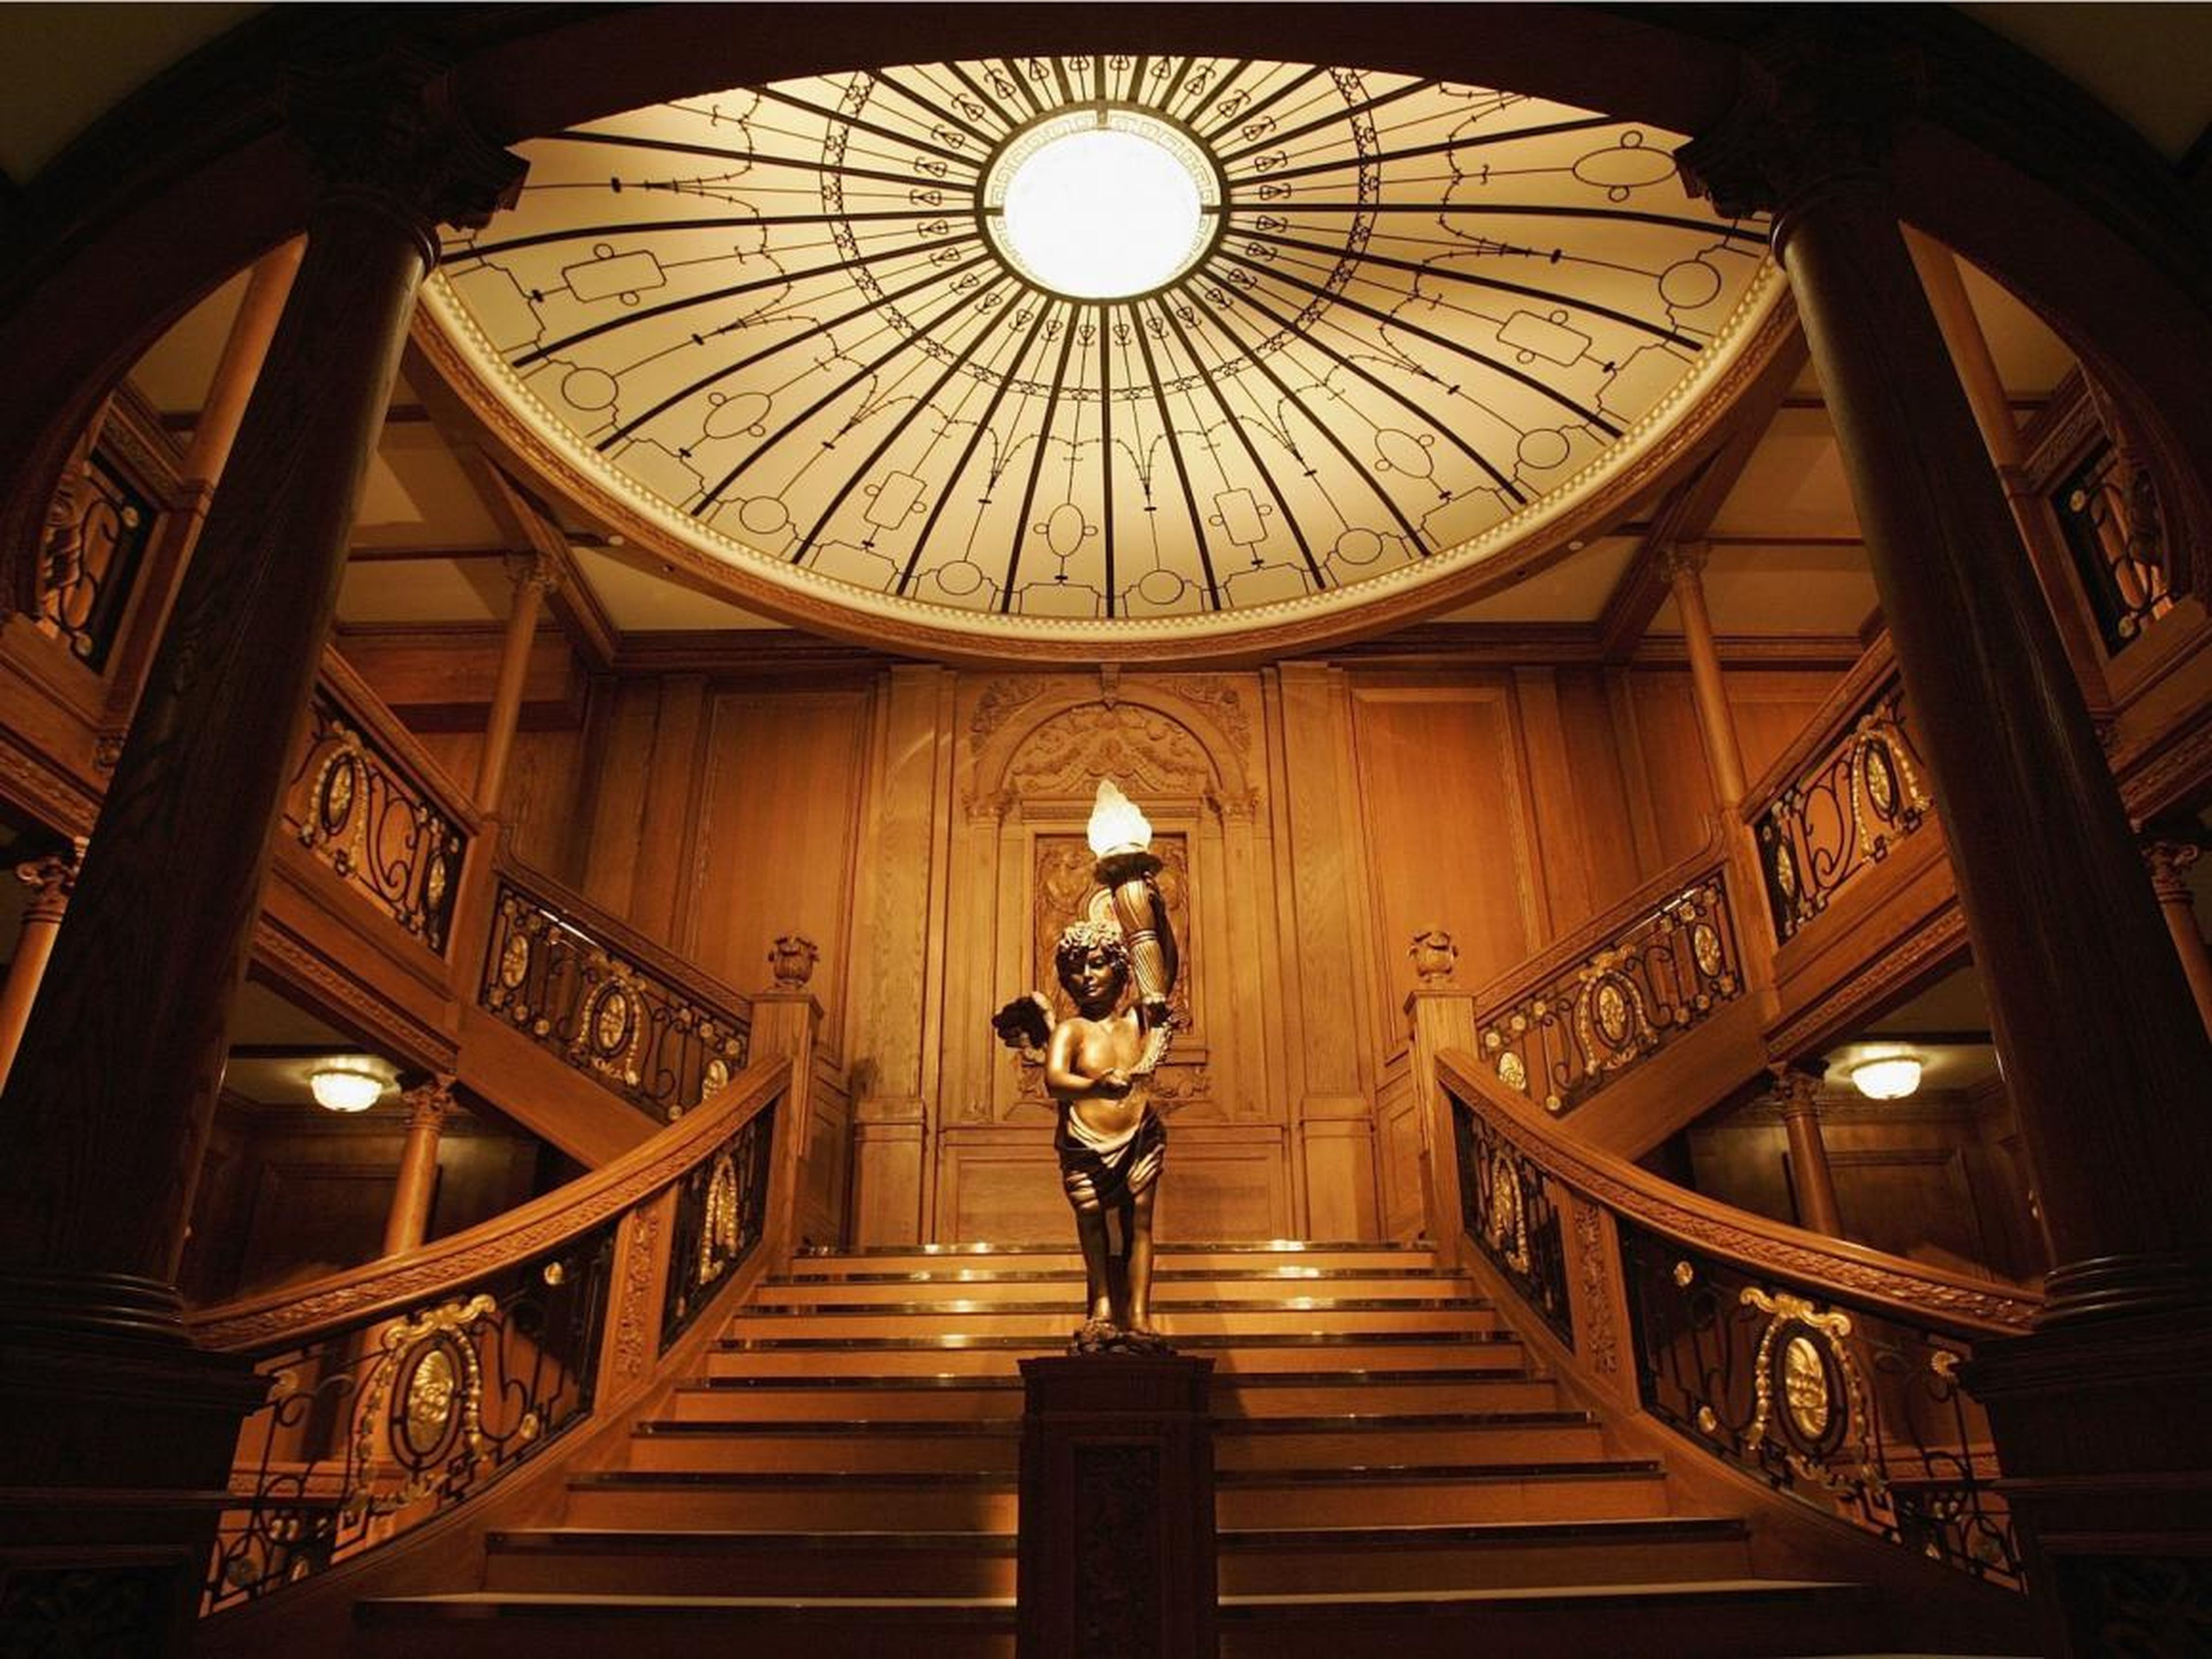 Réplica de la gran escalera del Titanic en una exhibición en San Francisco.